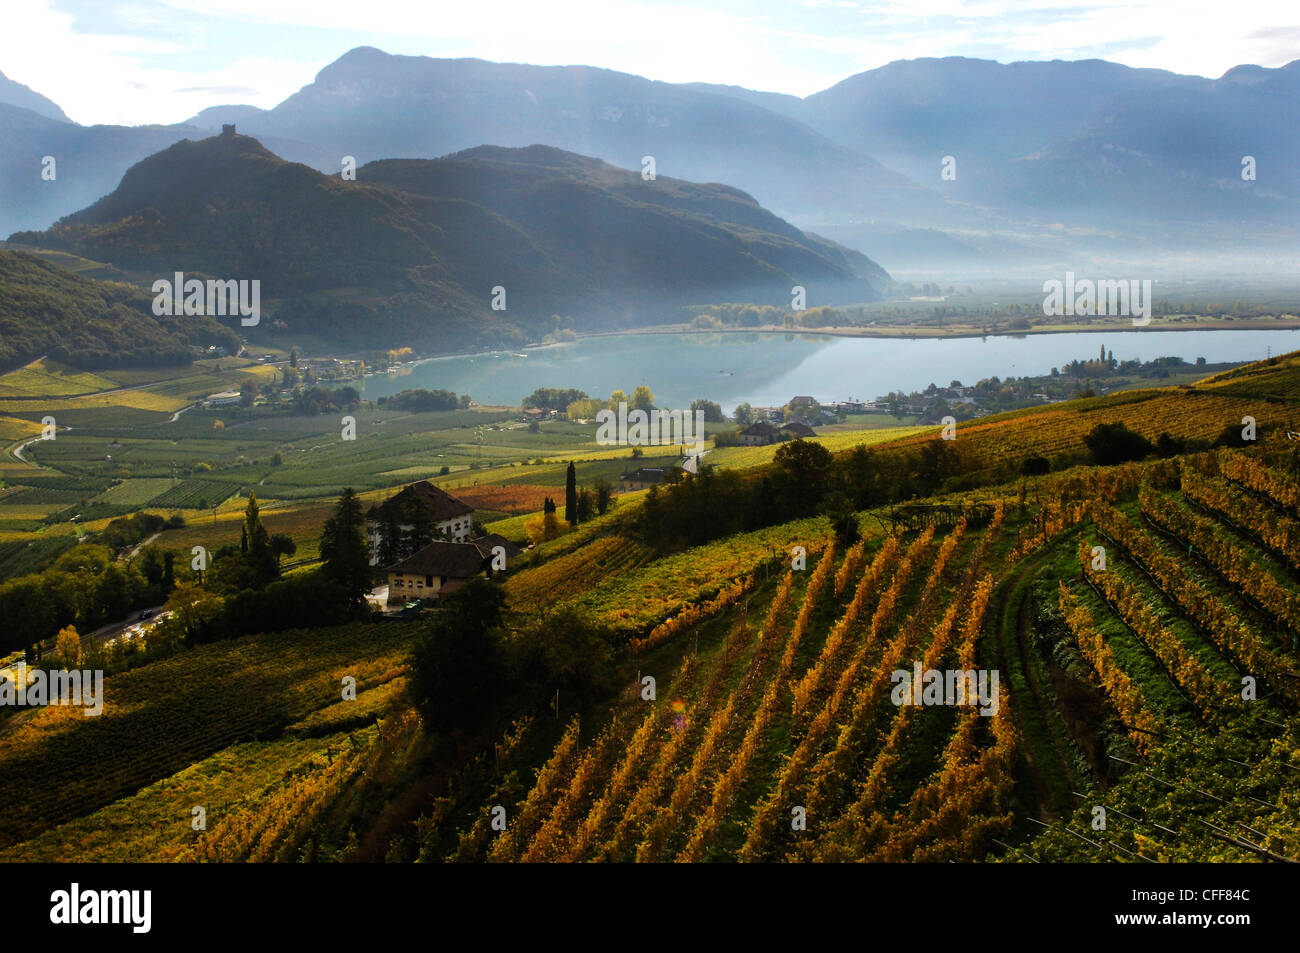 Angolo di Alta Vista del vigneto al lago di Caldaro, Kaltern an der Weinstrasse, Sud Tirolo, Alto Adige, Italia, Europa Foto Stock